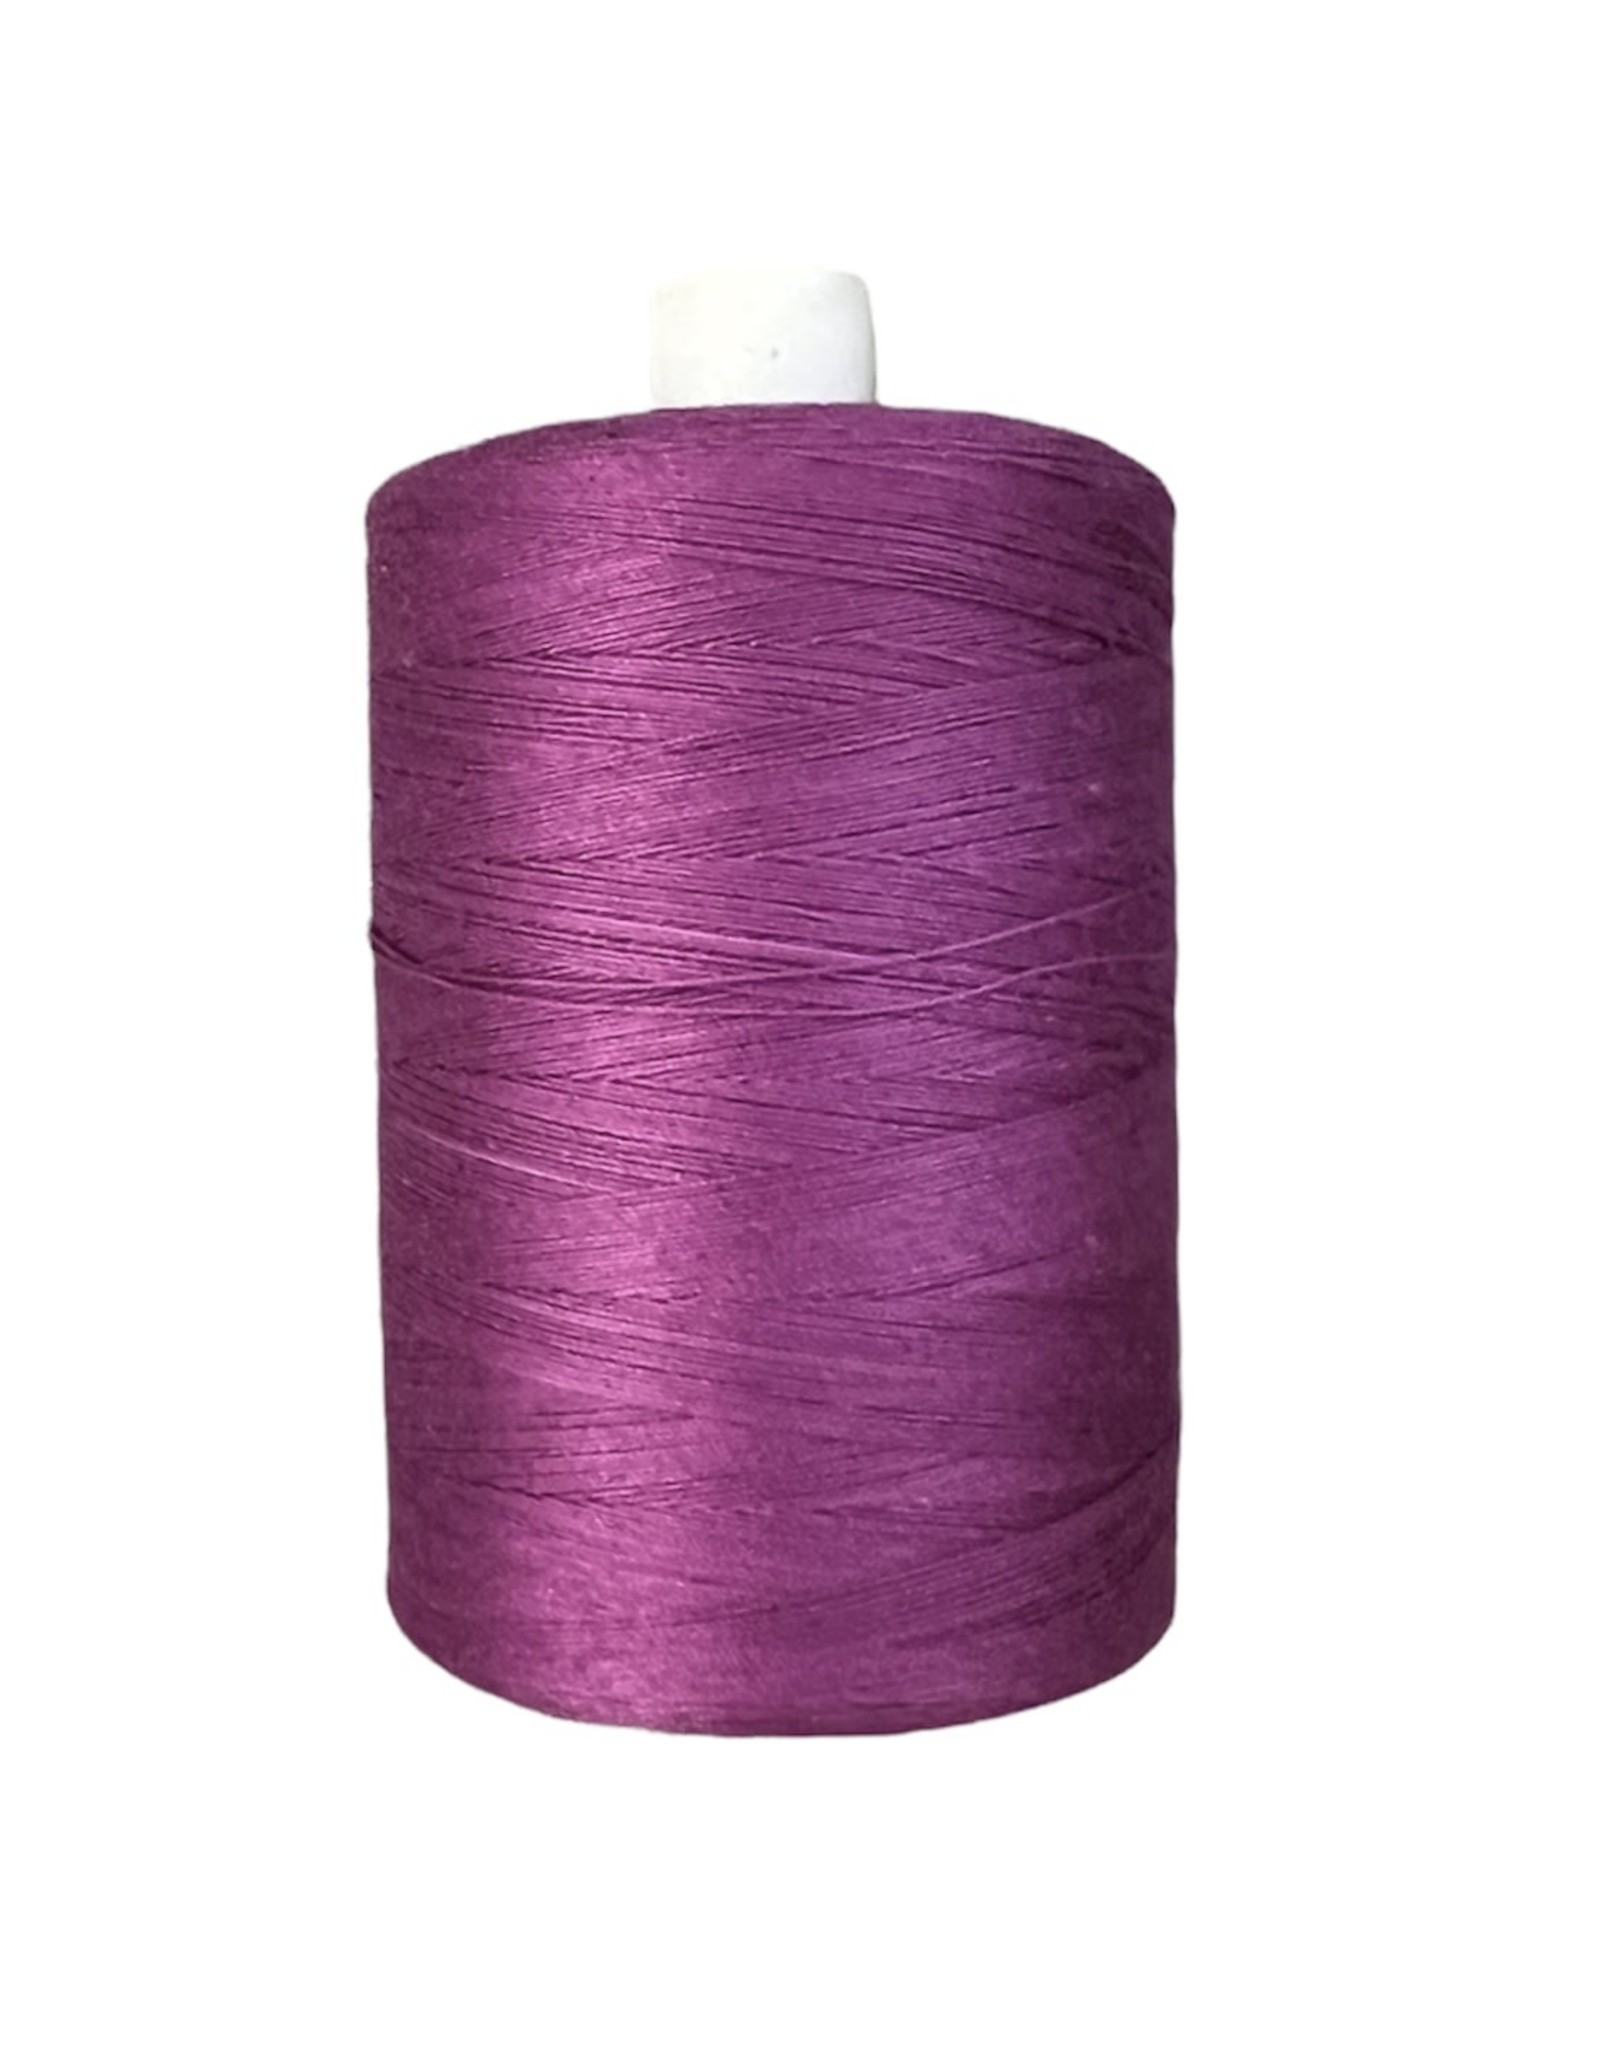 Cotton 50wt - 1500m - Dark Purple 82